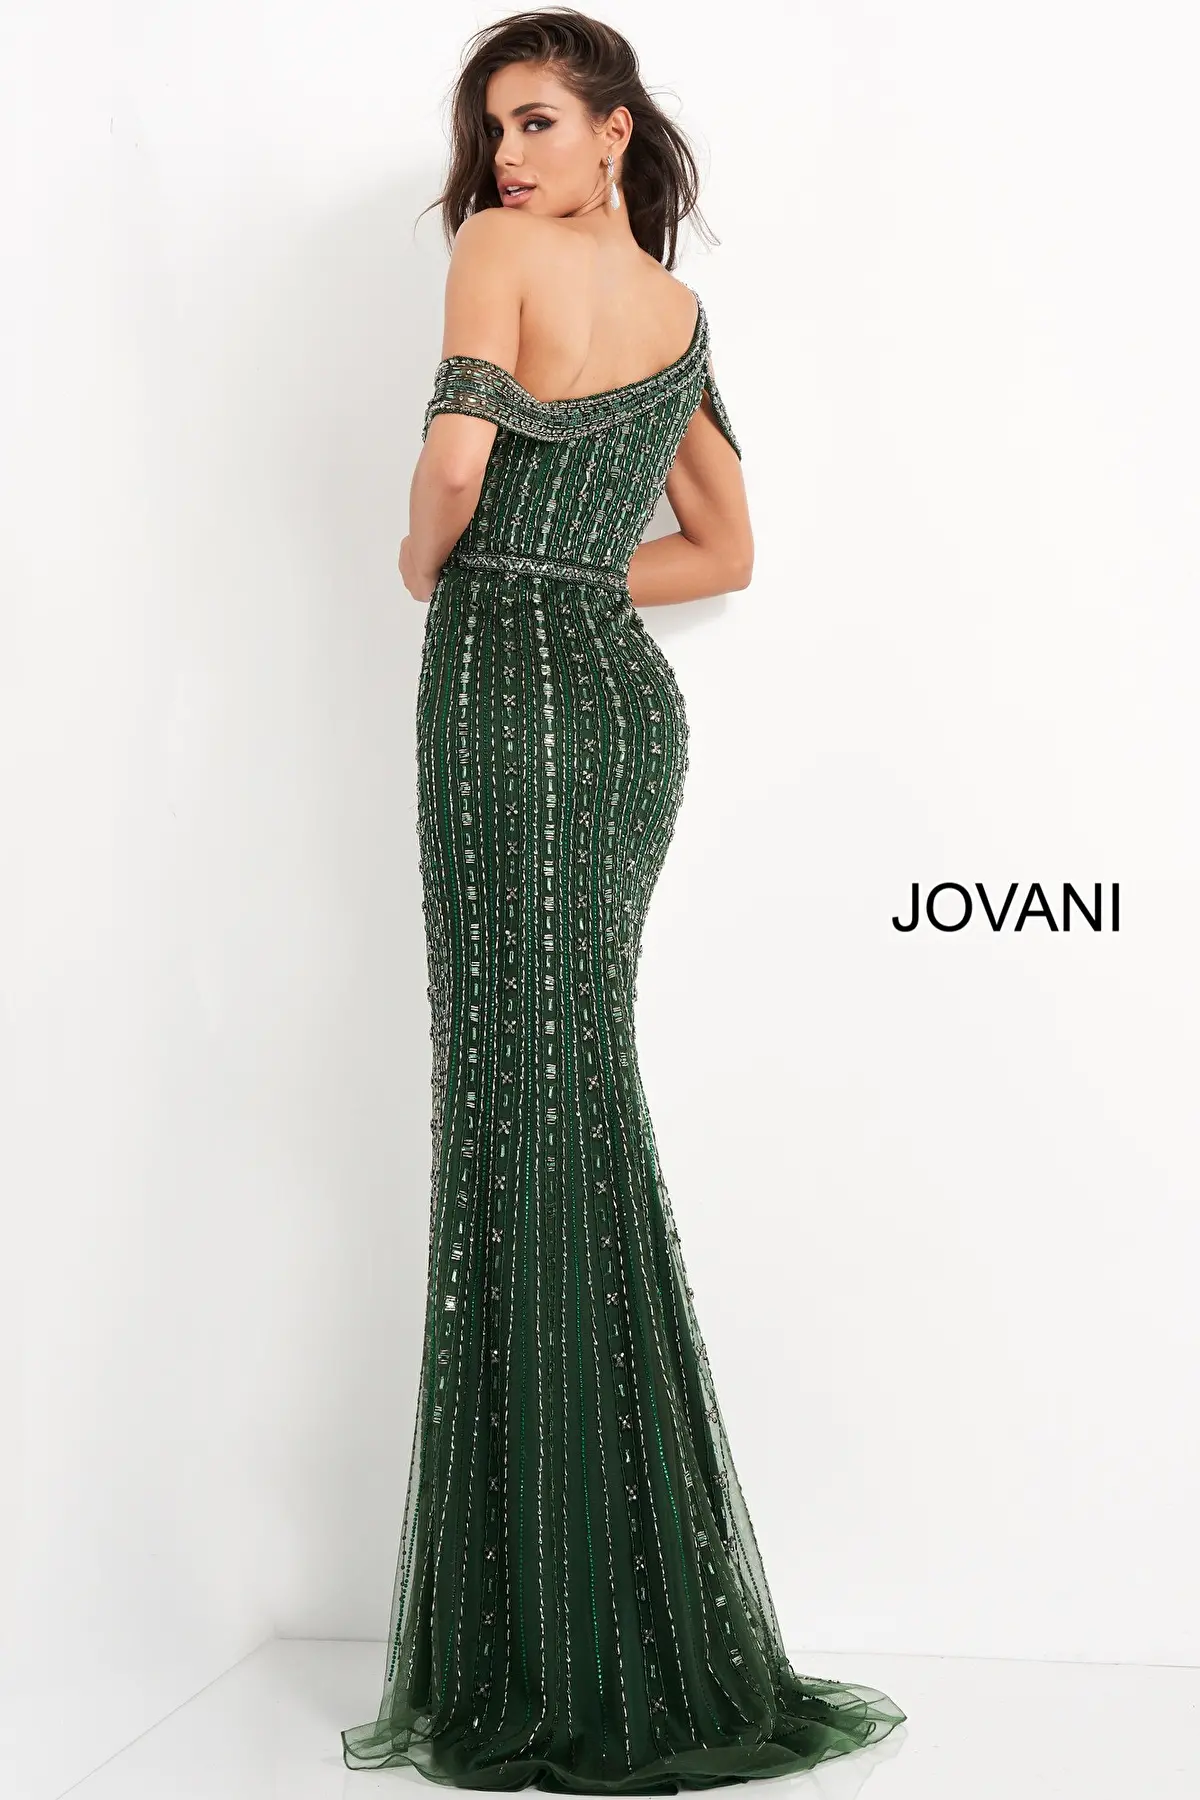 Jovani 03124 | Emerald Off the Shoulder Embellished Gown